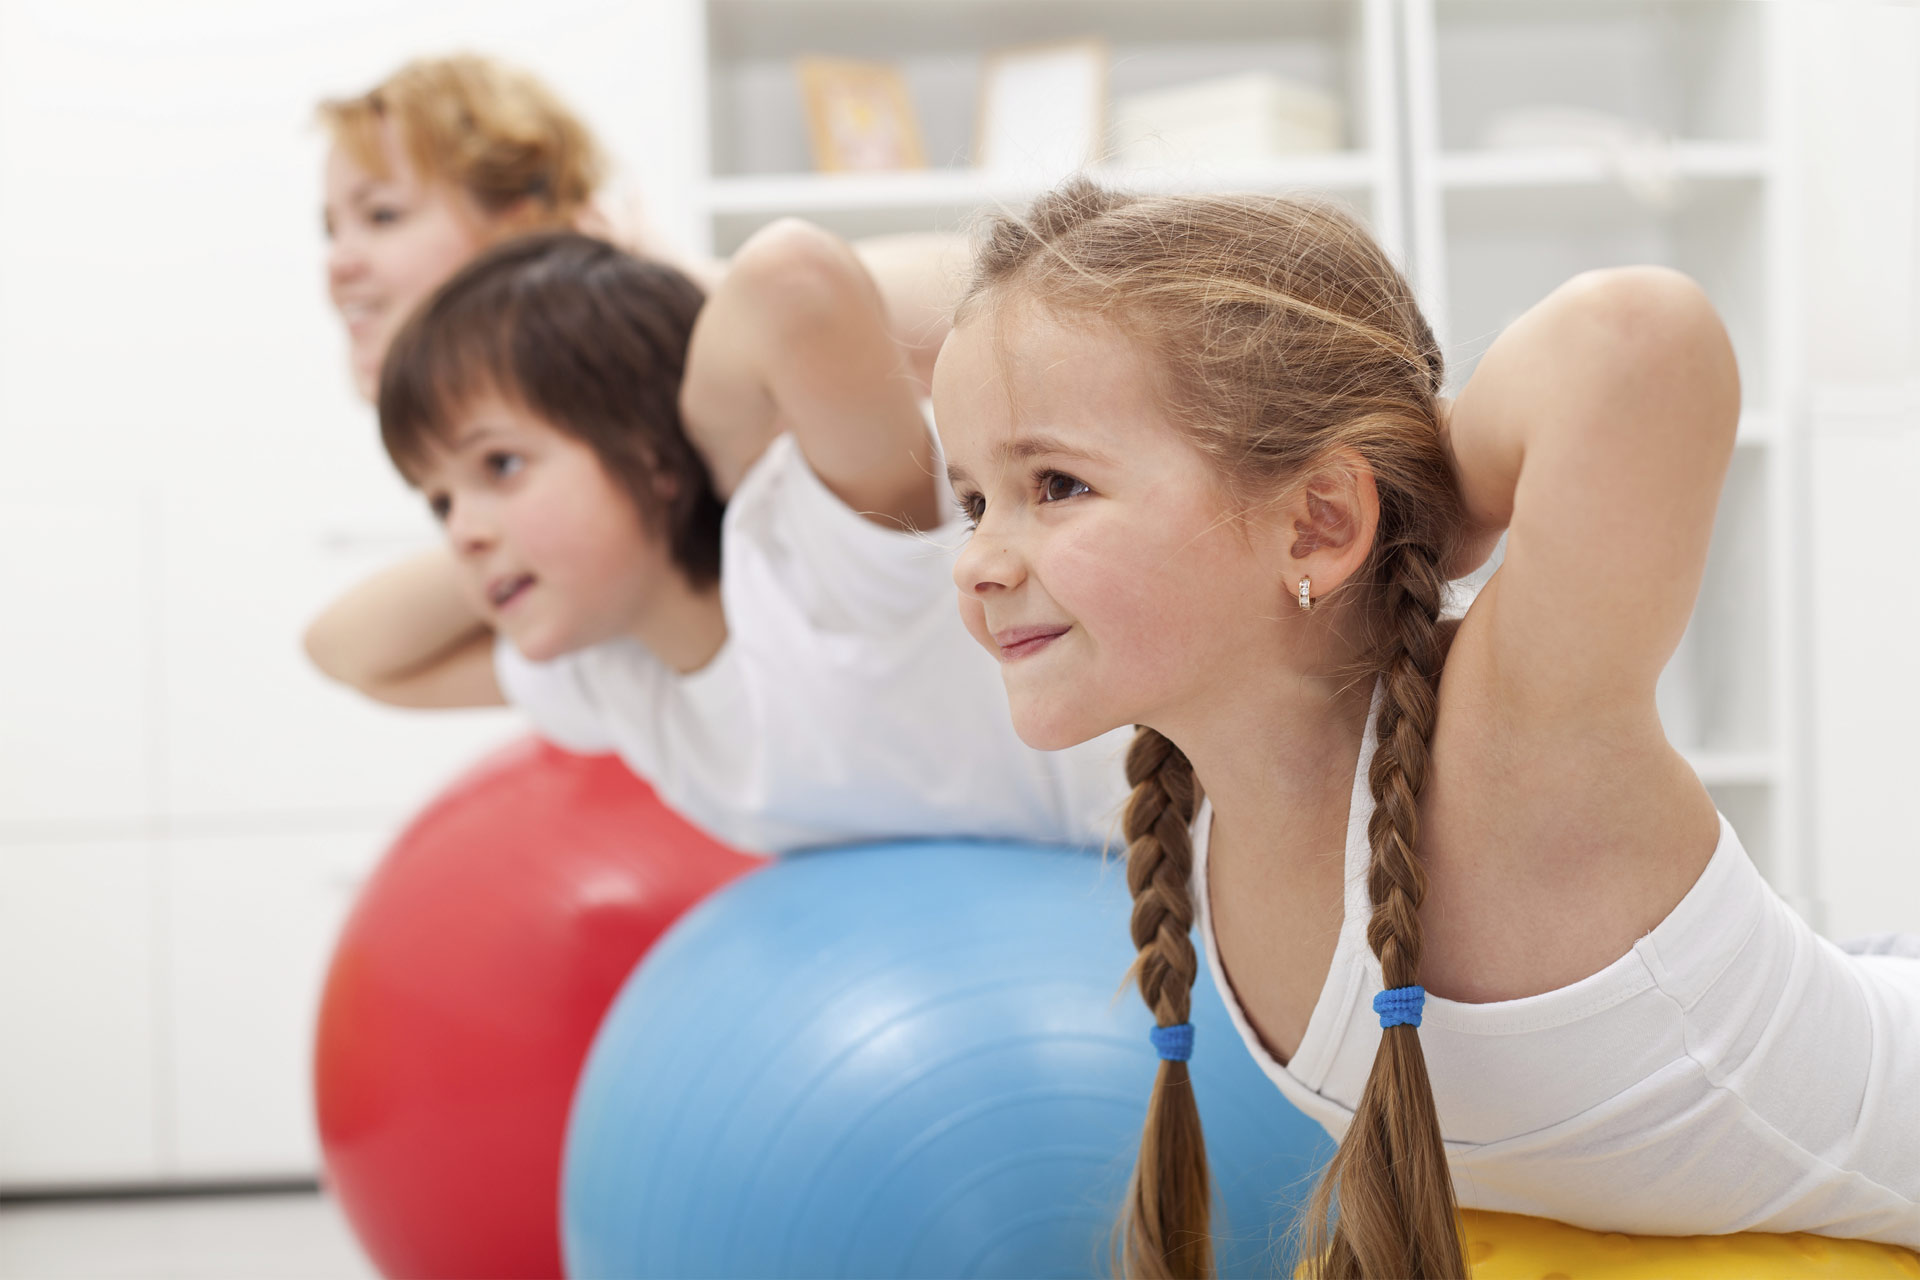 La actividad física estimula su bienestar y desarrollo integral. Además, los motivará a mantenerse activos cuando sean grandes